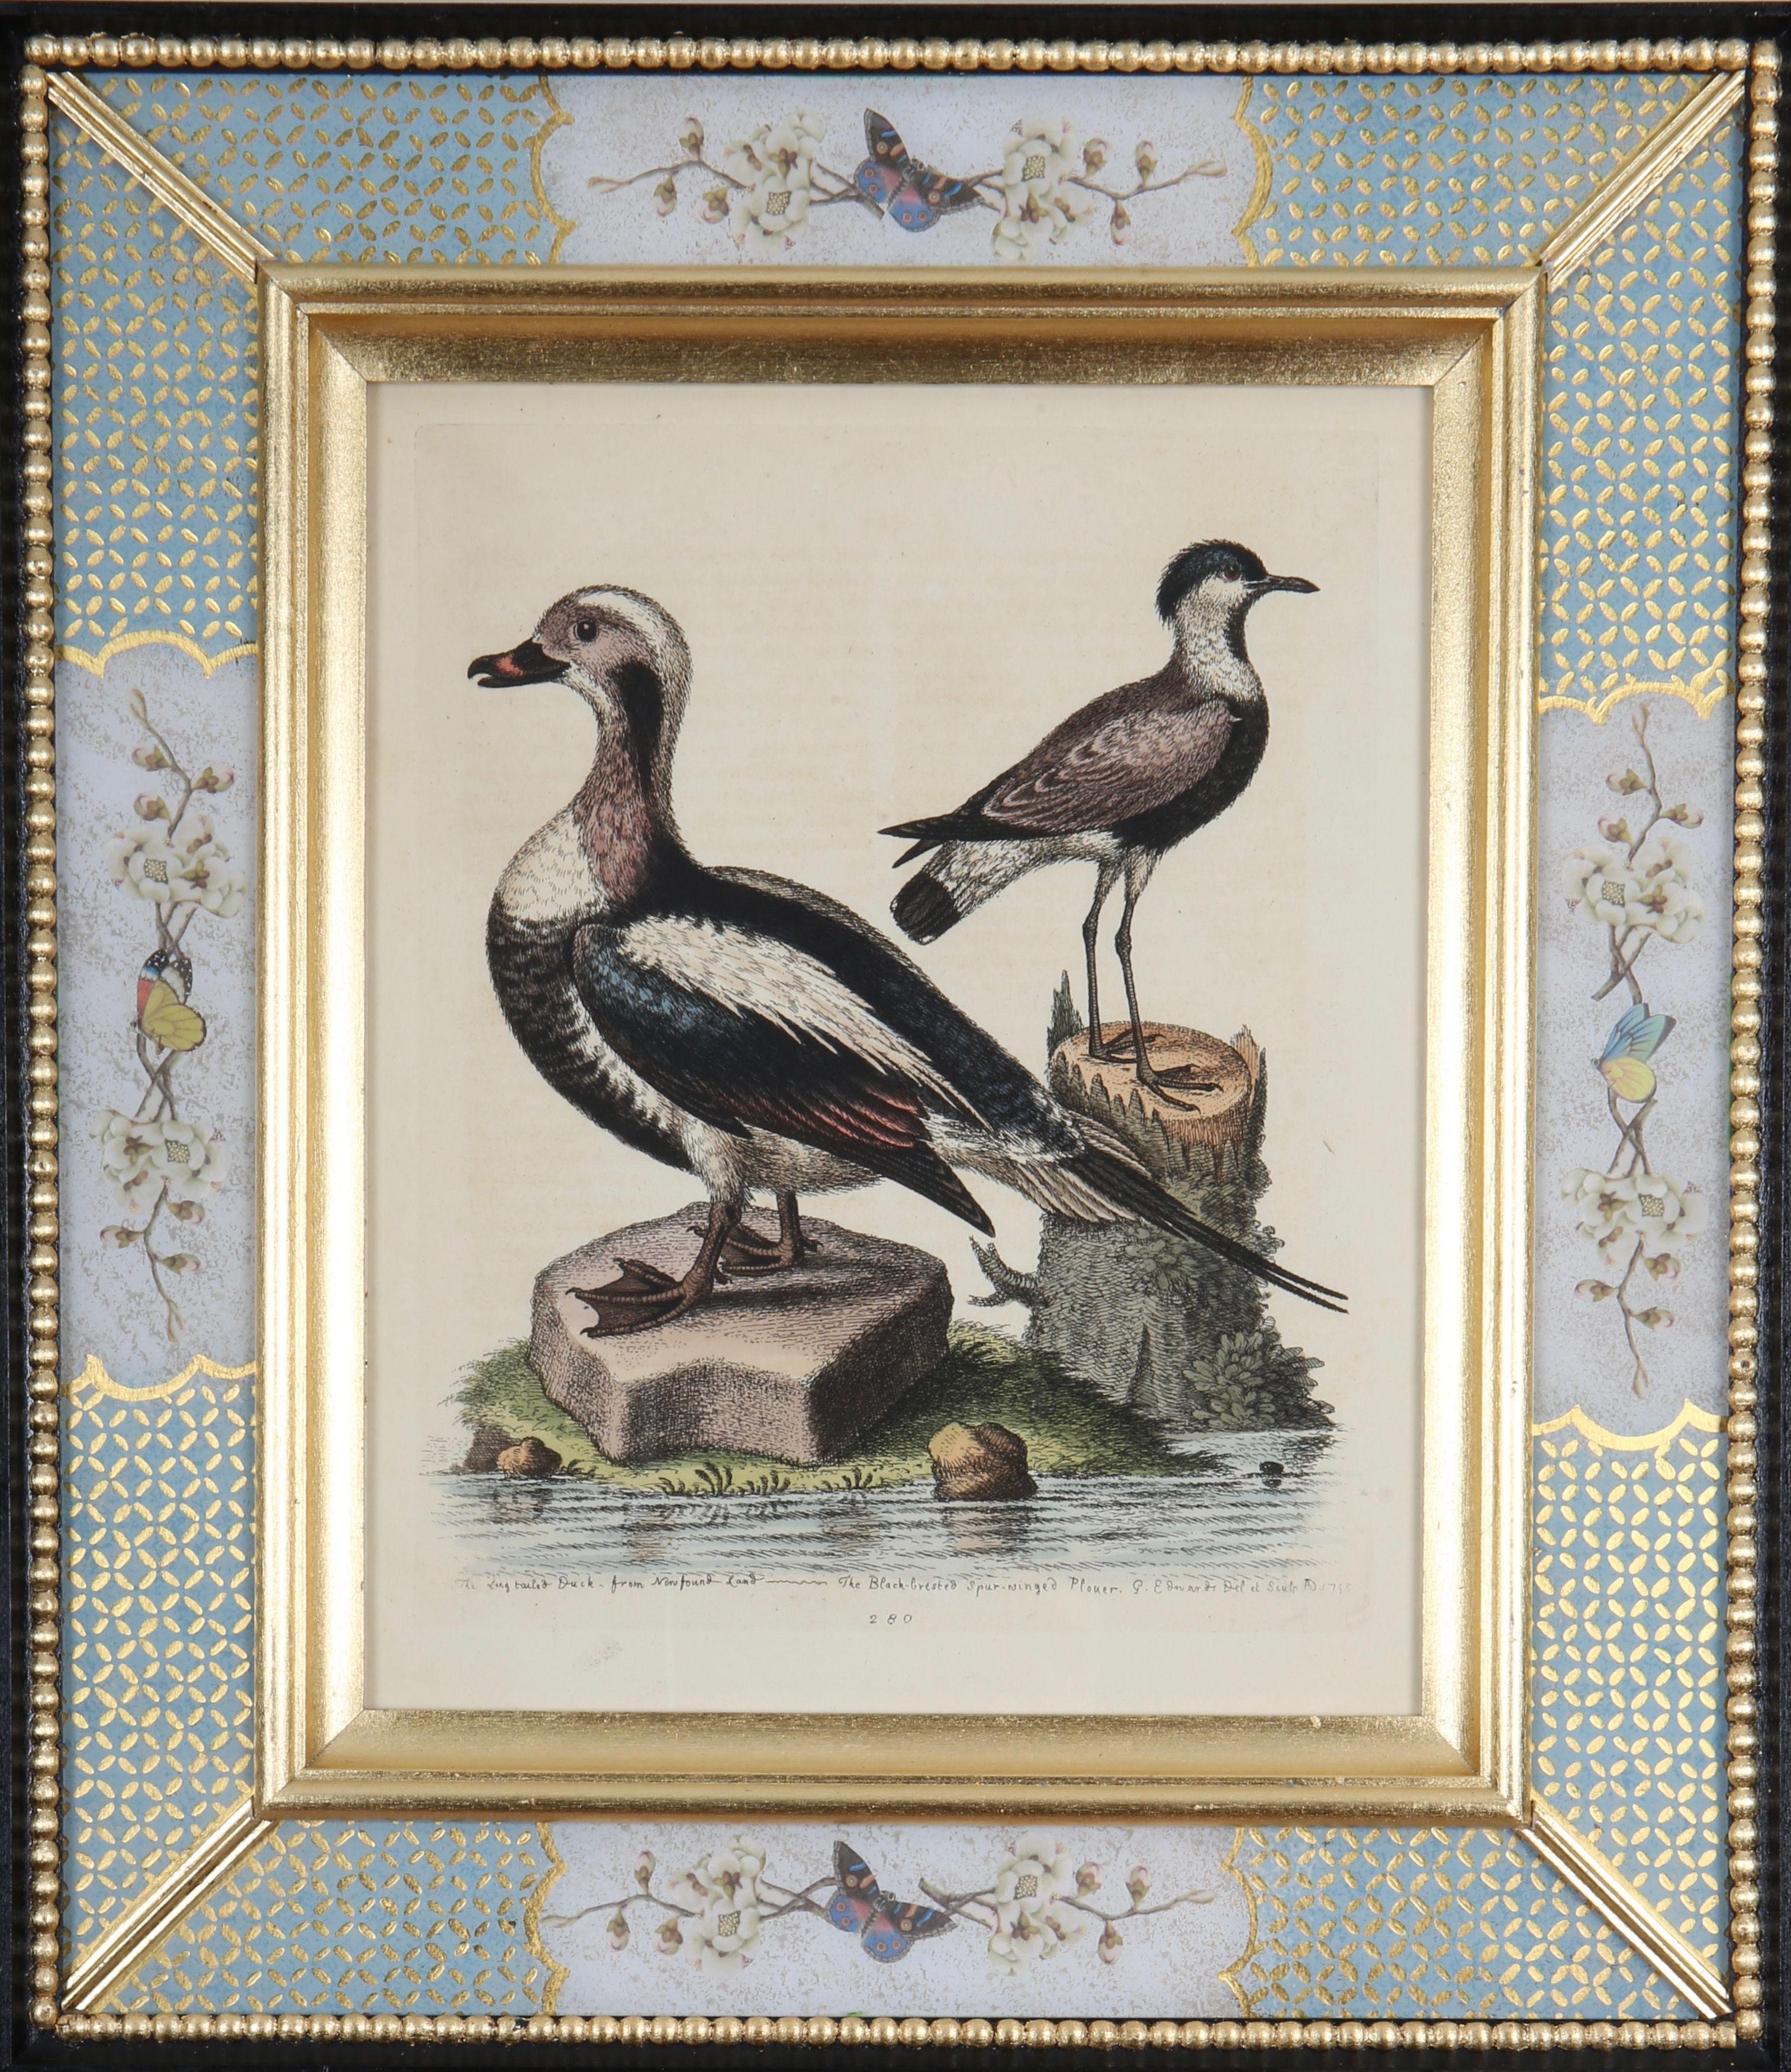 George Edwards: "Eine Geschichte der ungewöhnlichen Vögel", 1749-1761.

Der bekannte englische Naturforscher und Ornithologe George Edwards (1694 -1773) ist vor allem für sein Werk "A Natural History of Uncommon Birds" bekannt, das er zwischen 1743